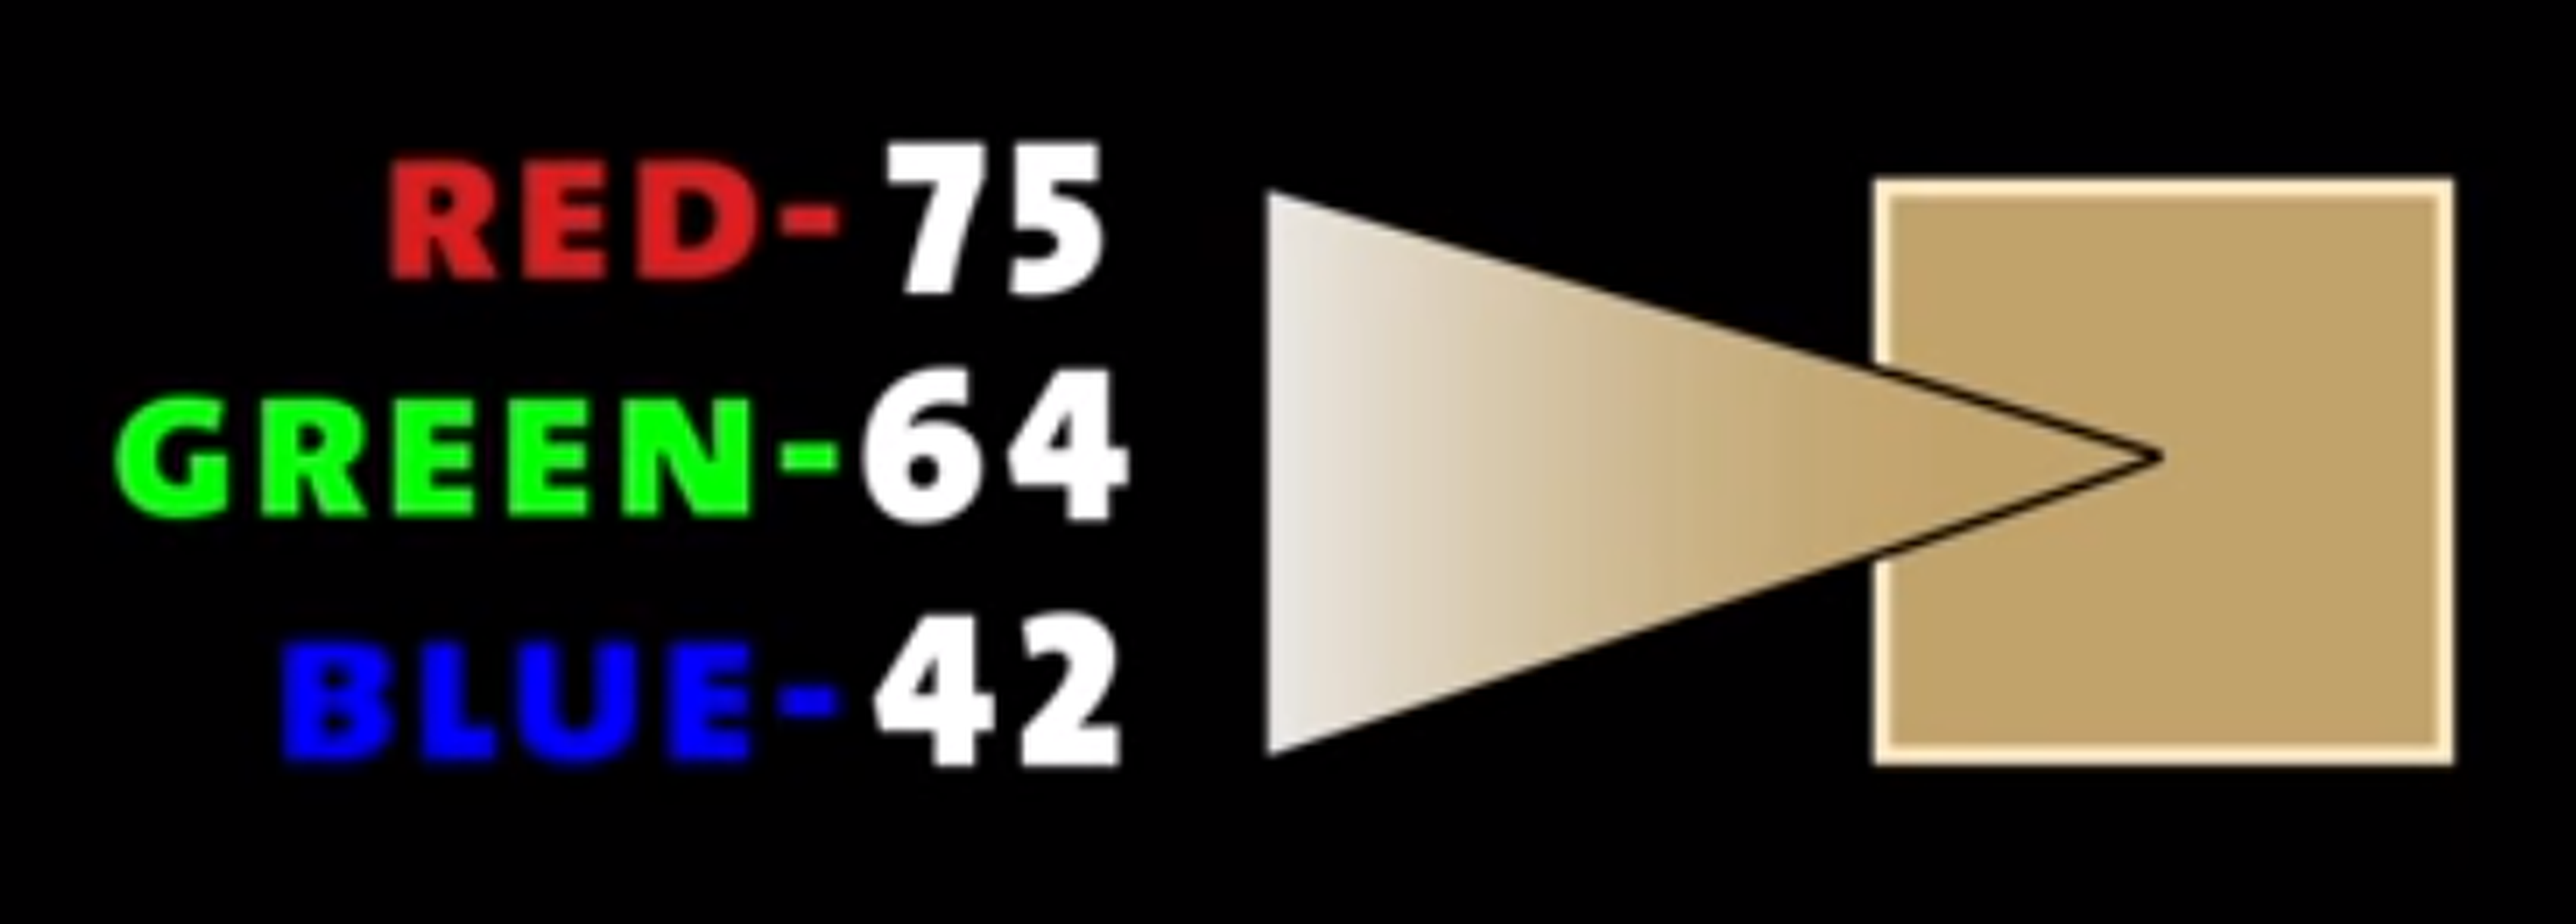 Numeración de cada píxel en la película Brave